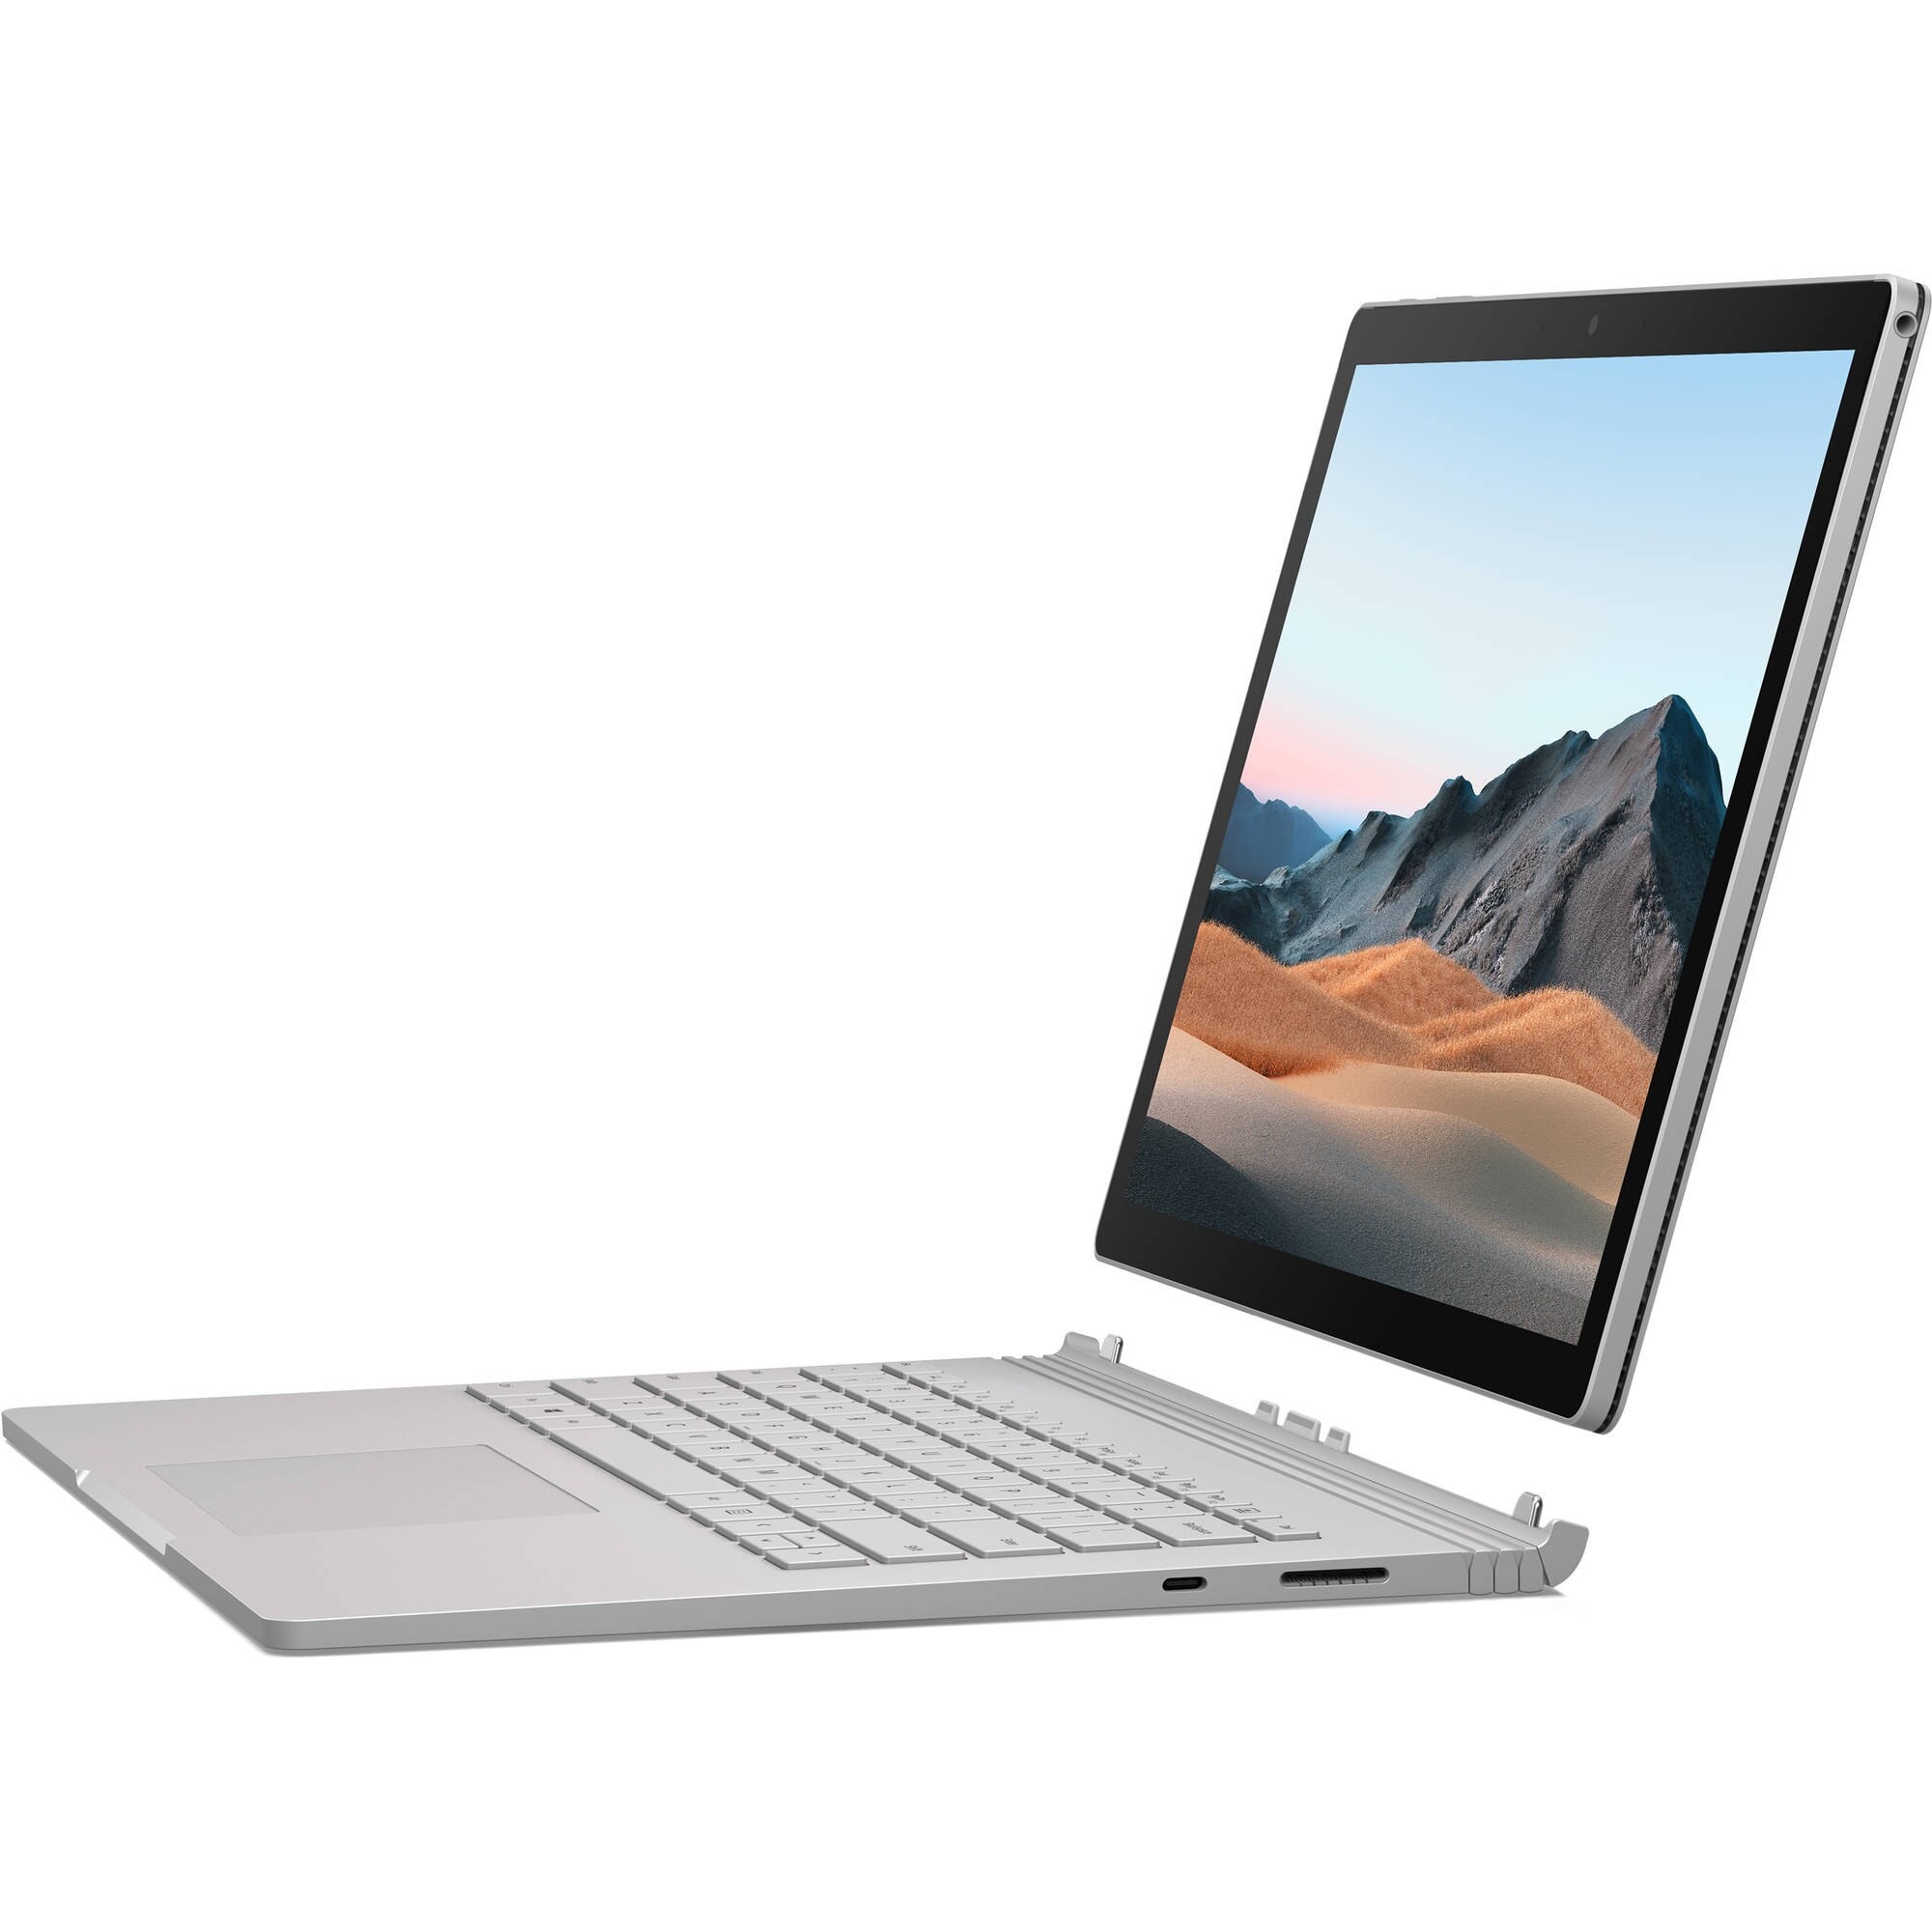 MICROSOFT V6F-00023 Laptop / Notebook 2